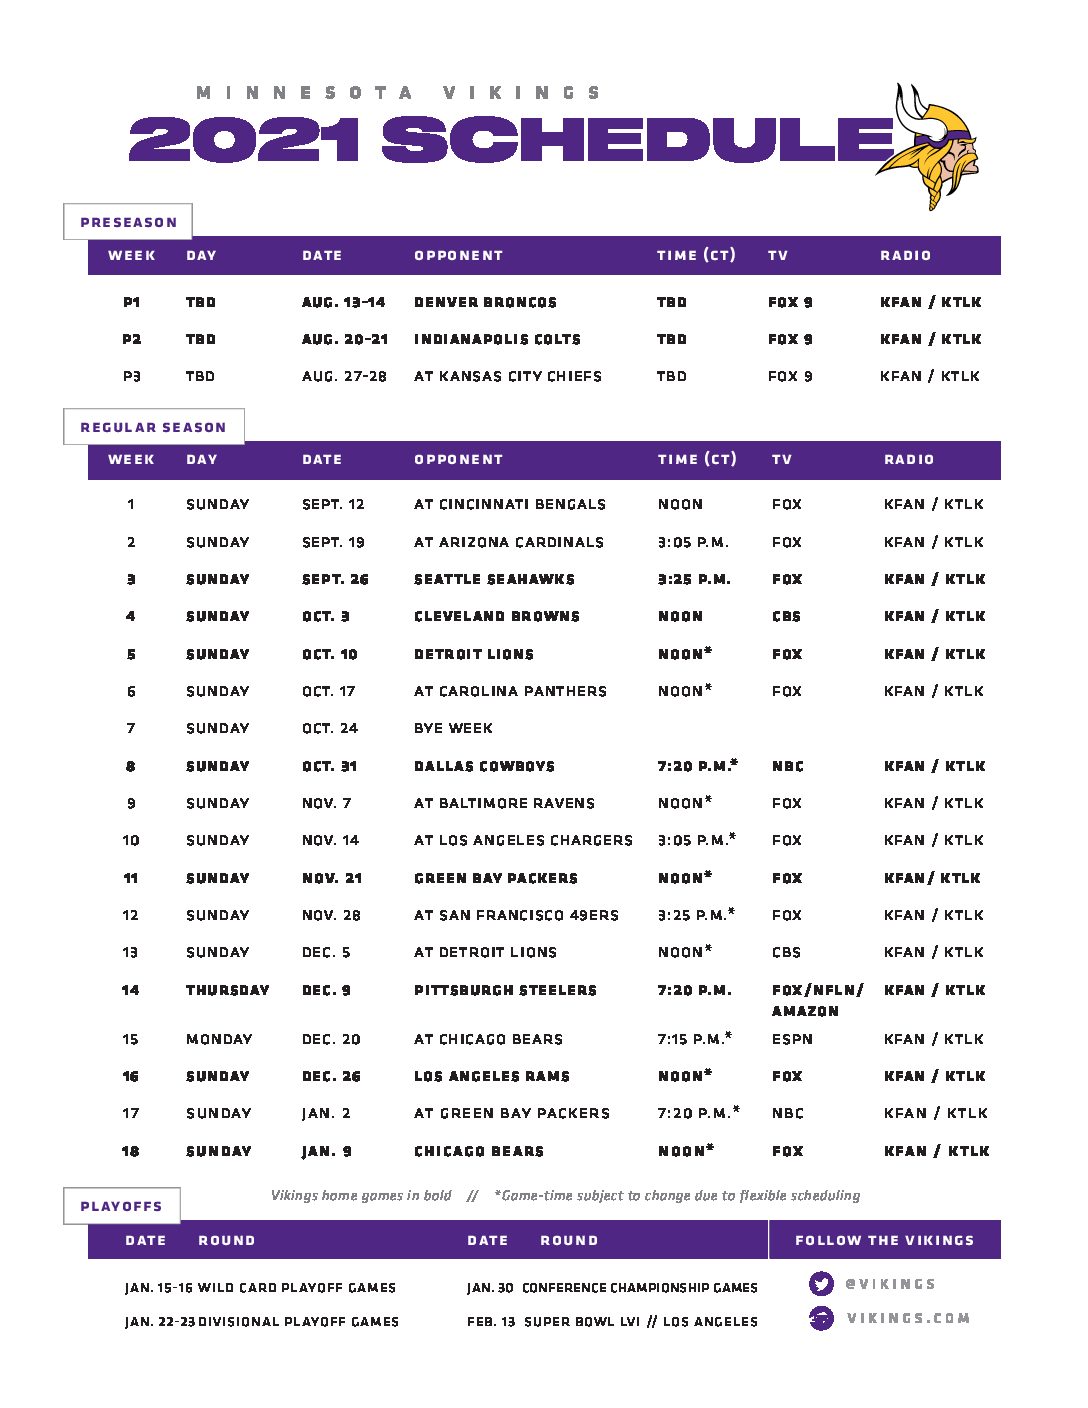 Minnesota Vikings 2022 Preseason Schedule Vikings Release 2021 Schedule - Minnesota News Network